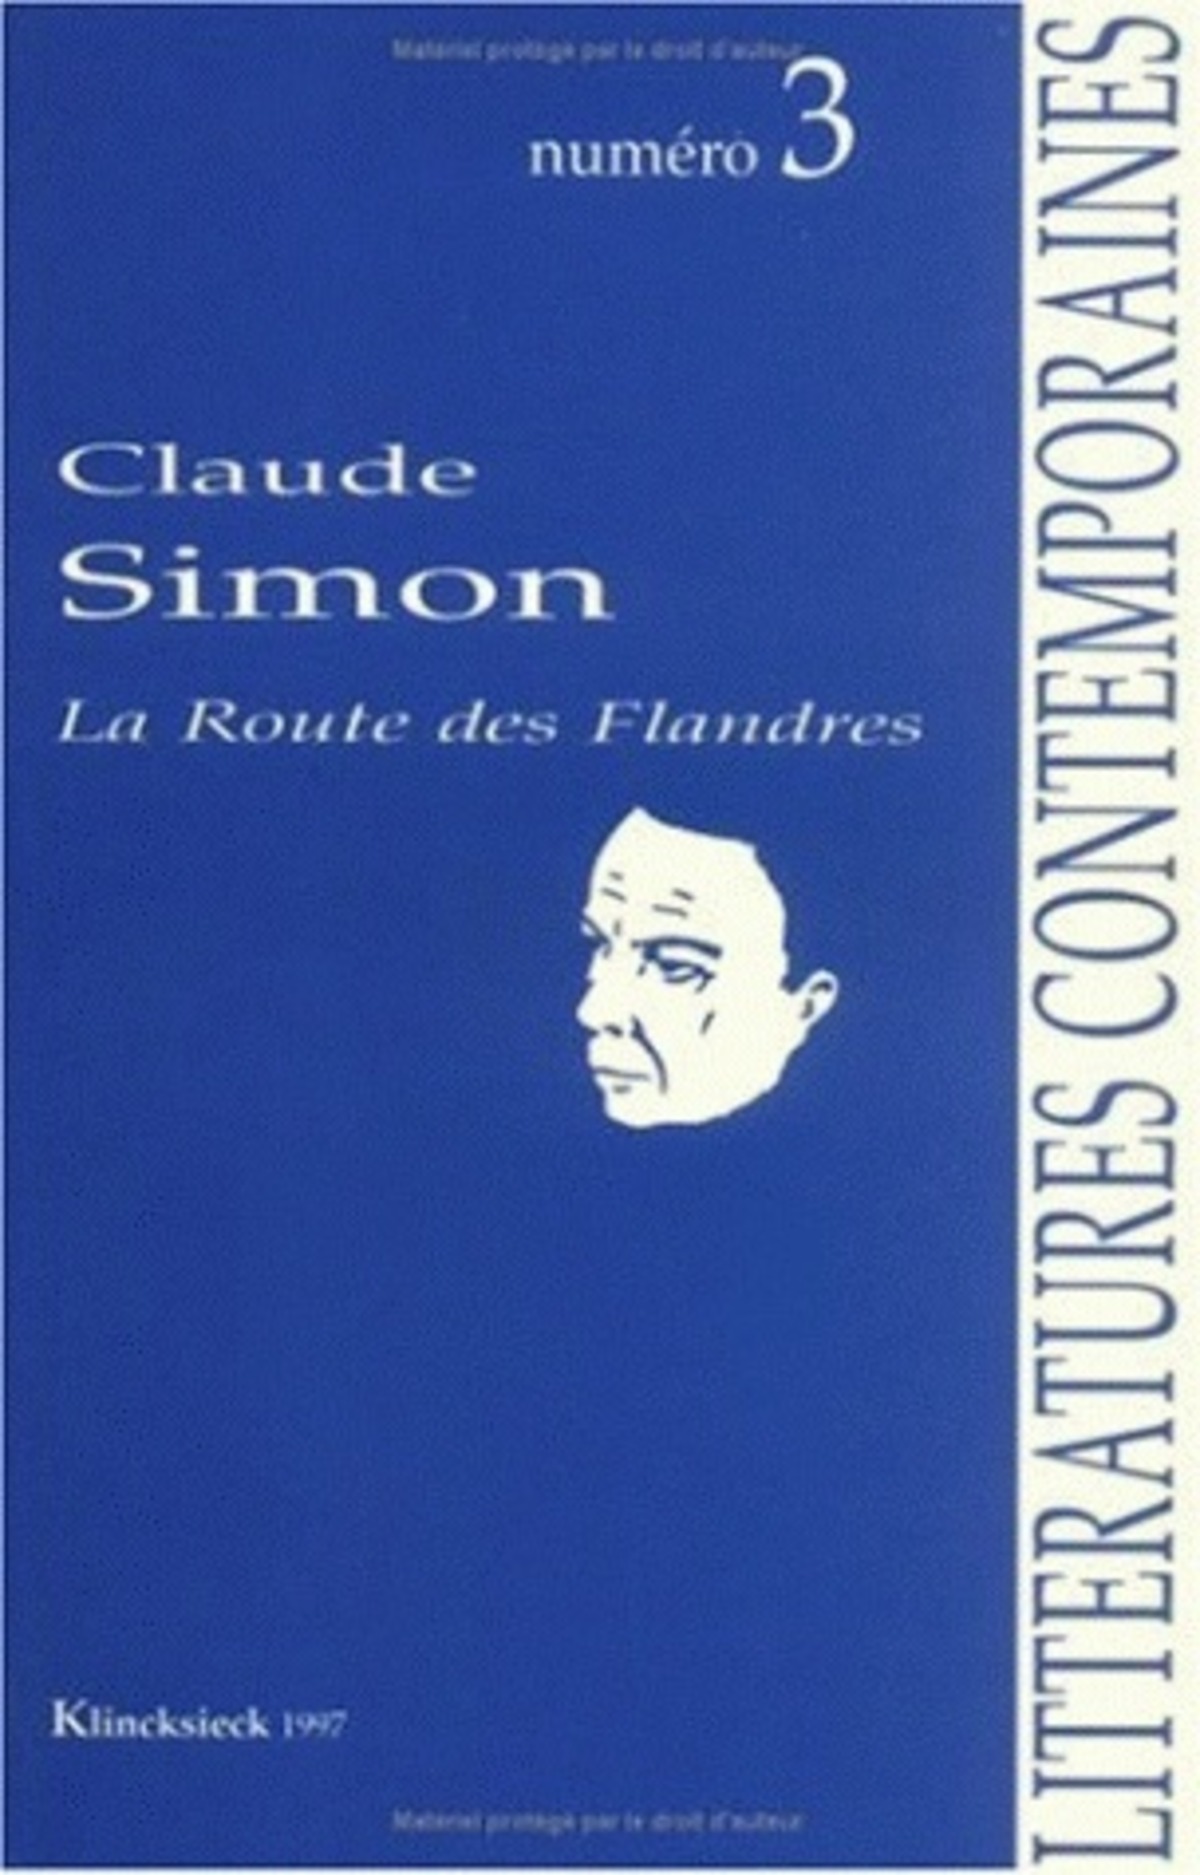 Claude Simon/La Route des Flandres